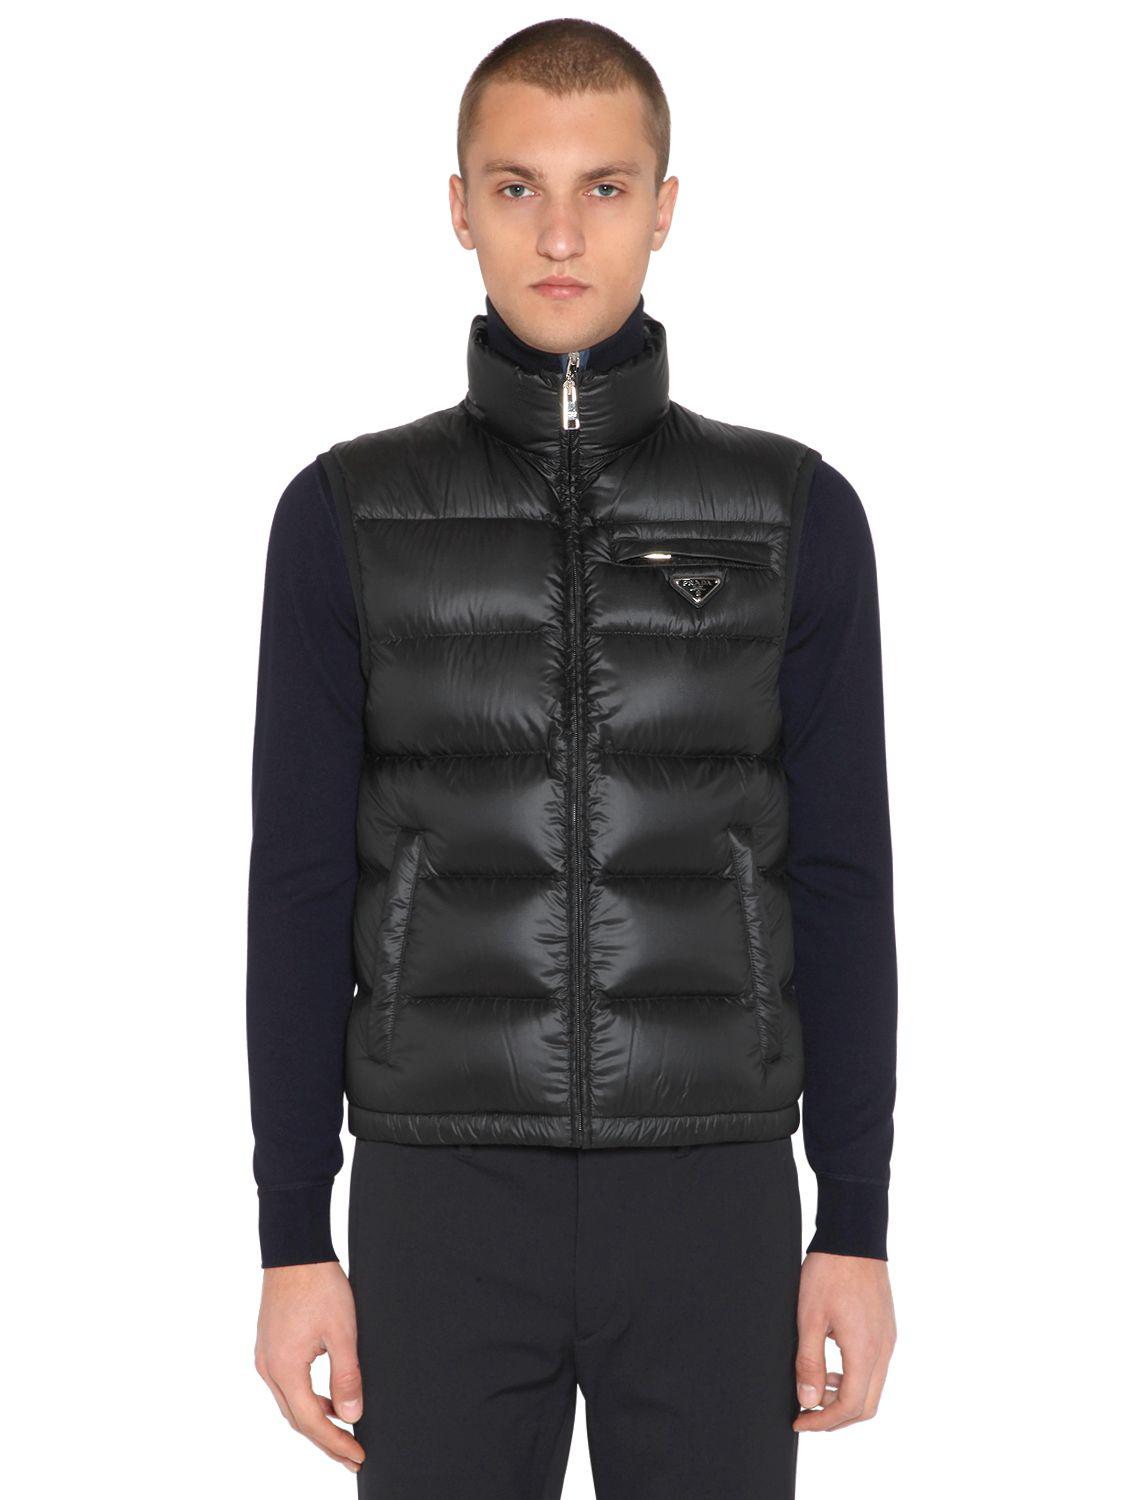 Prada Synthetic Ripstop Nylon Down Vest in Black for Men - Lyst